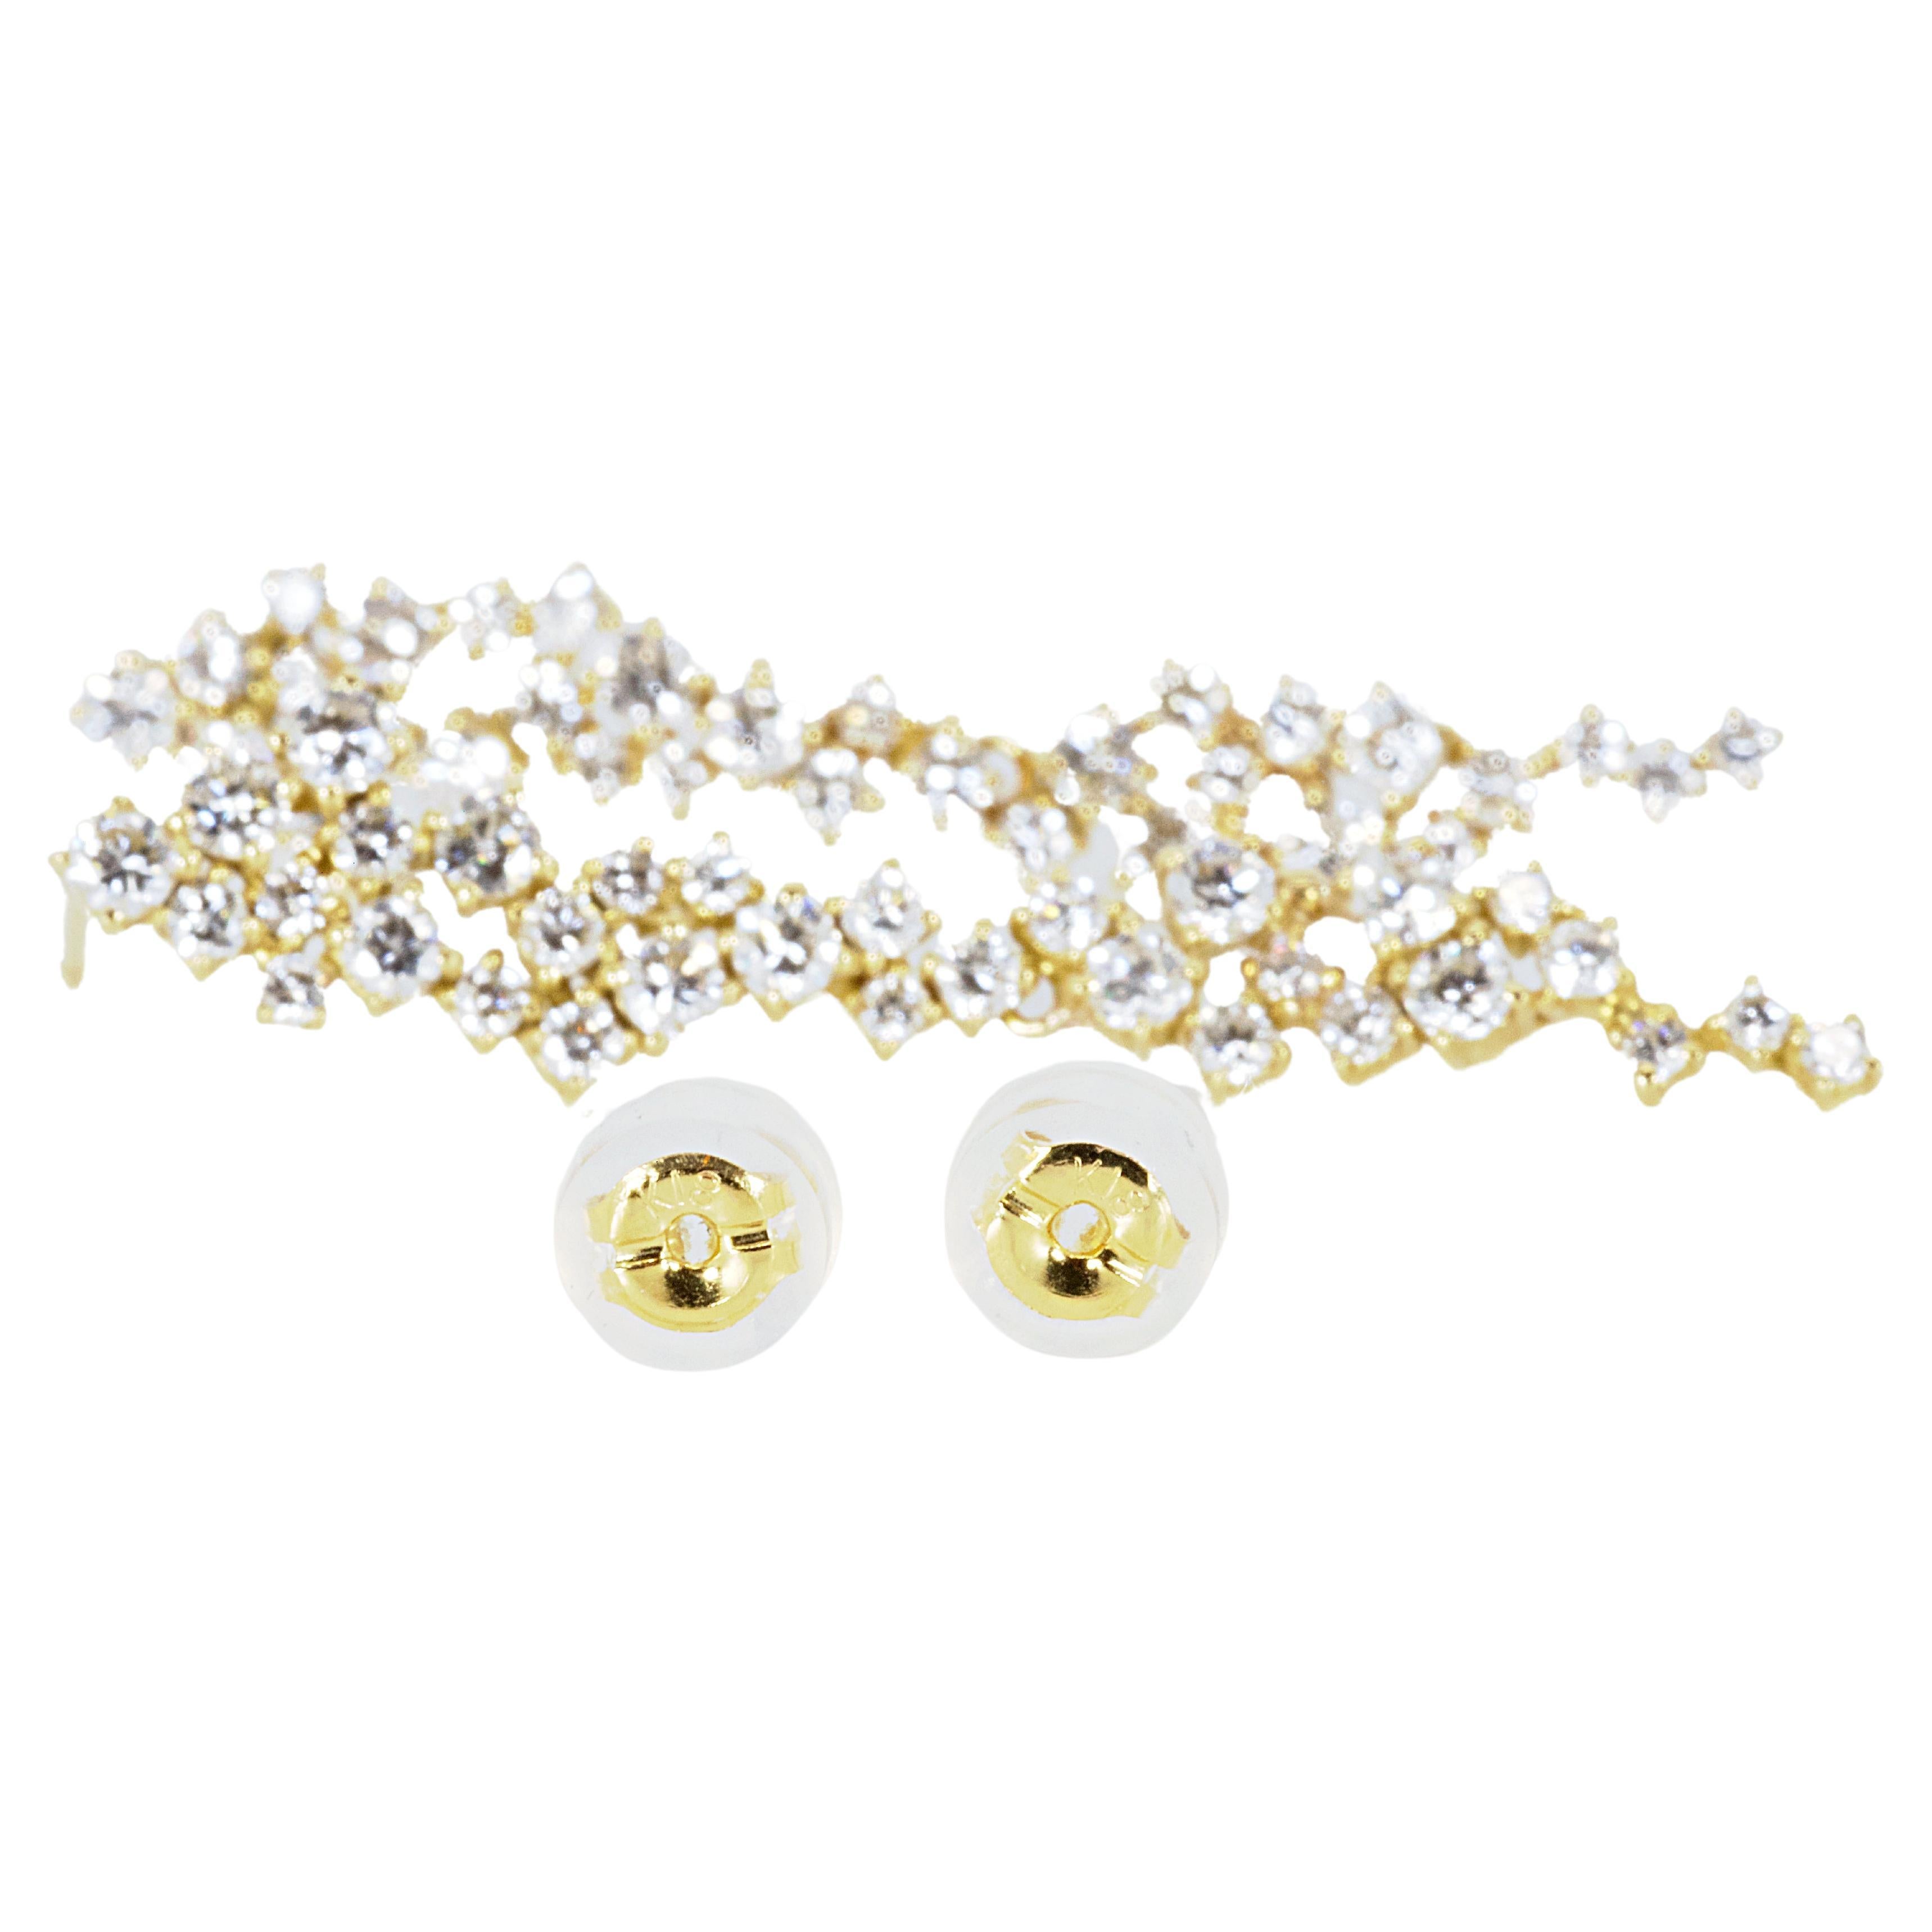 Schönes Paar von 18k Gelbgold baumeln Diamant-Ohrringe mit 1,60 insgesamt Diamant Karat Gewicht. Dieses Paar Ohrringe wird mit NGI-Bericht und einer schicken Box geliefert.

64 Diamant-Hauptsteine von je 0,025 ct., insgesamt 1,60 ct.
Schliff: runder